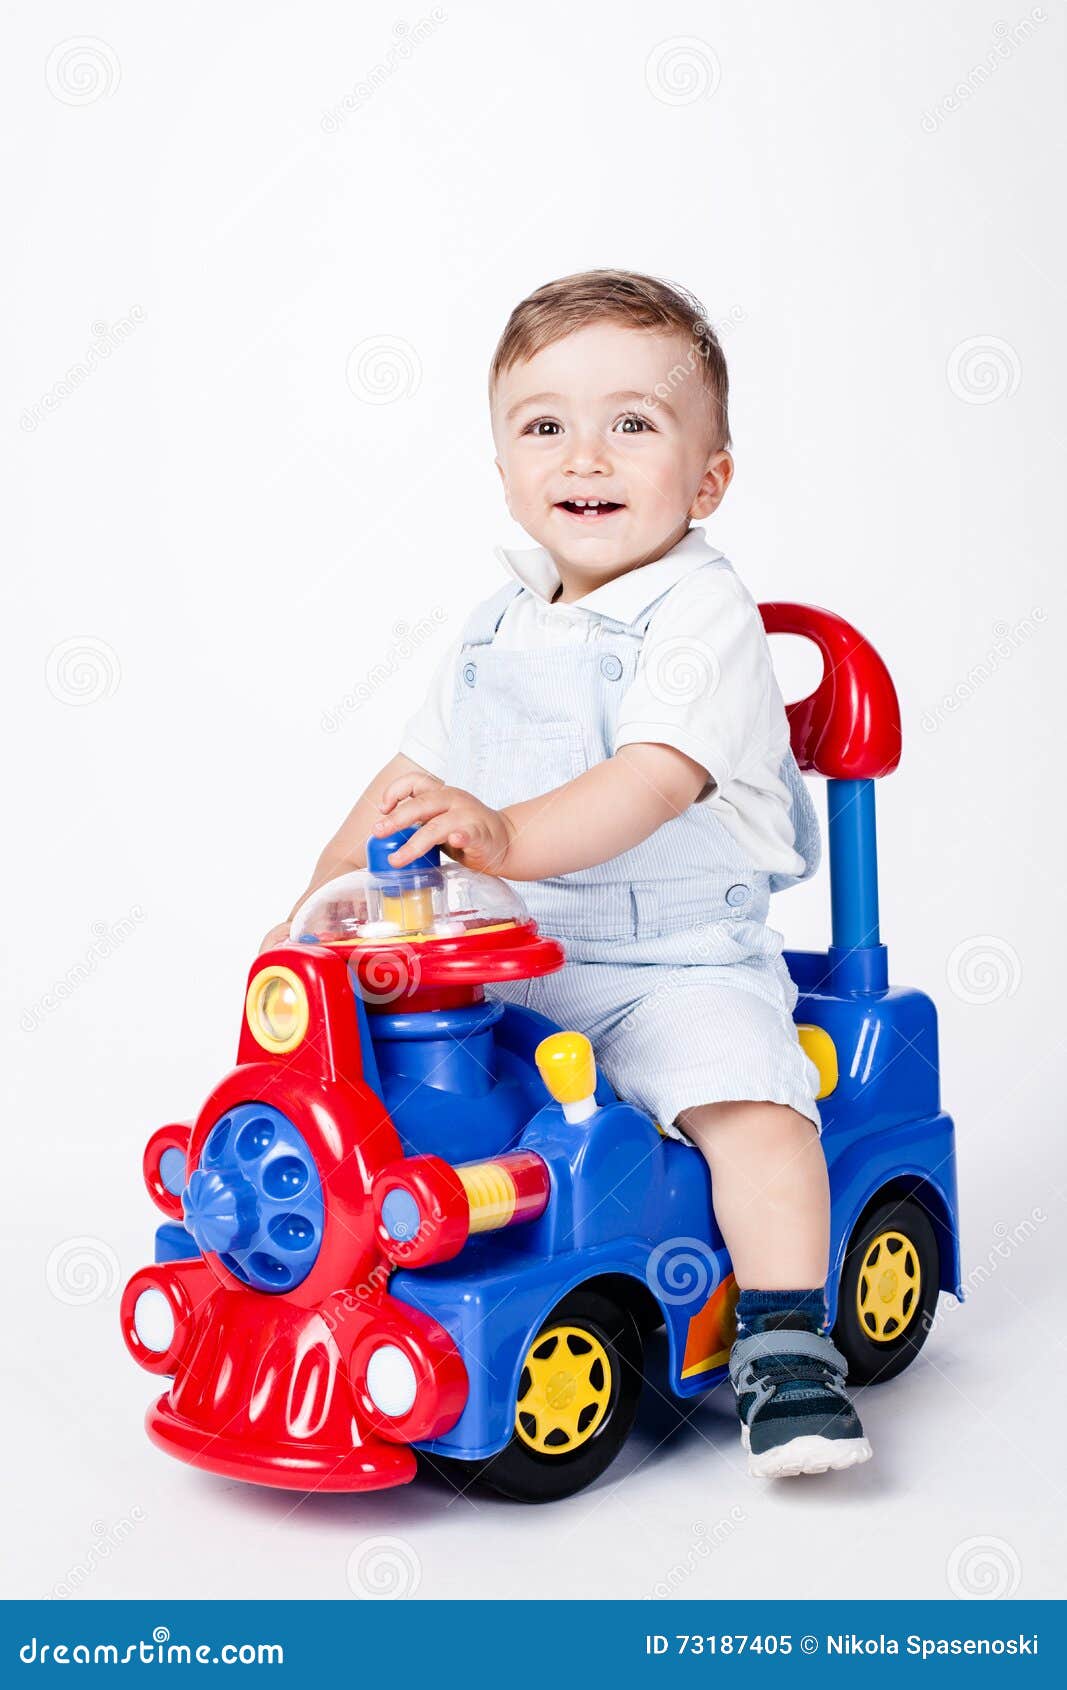 Camion jouet bébé